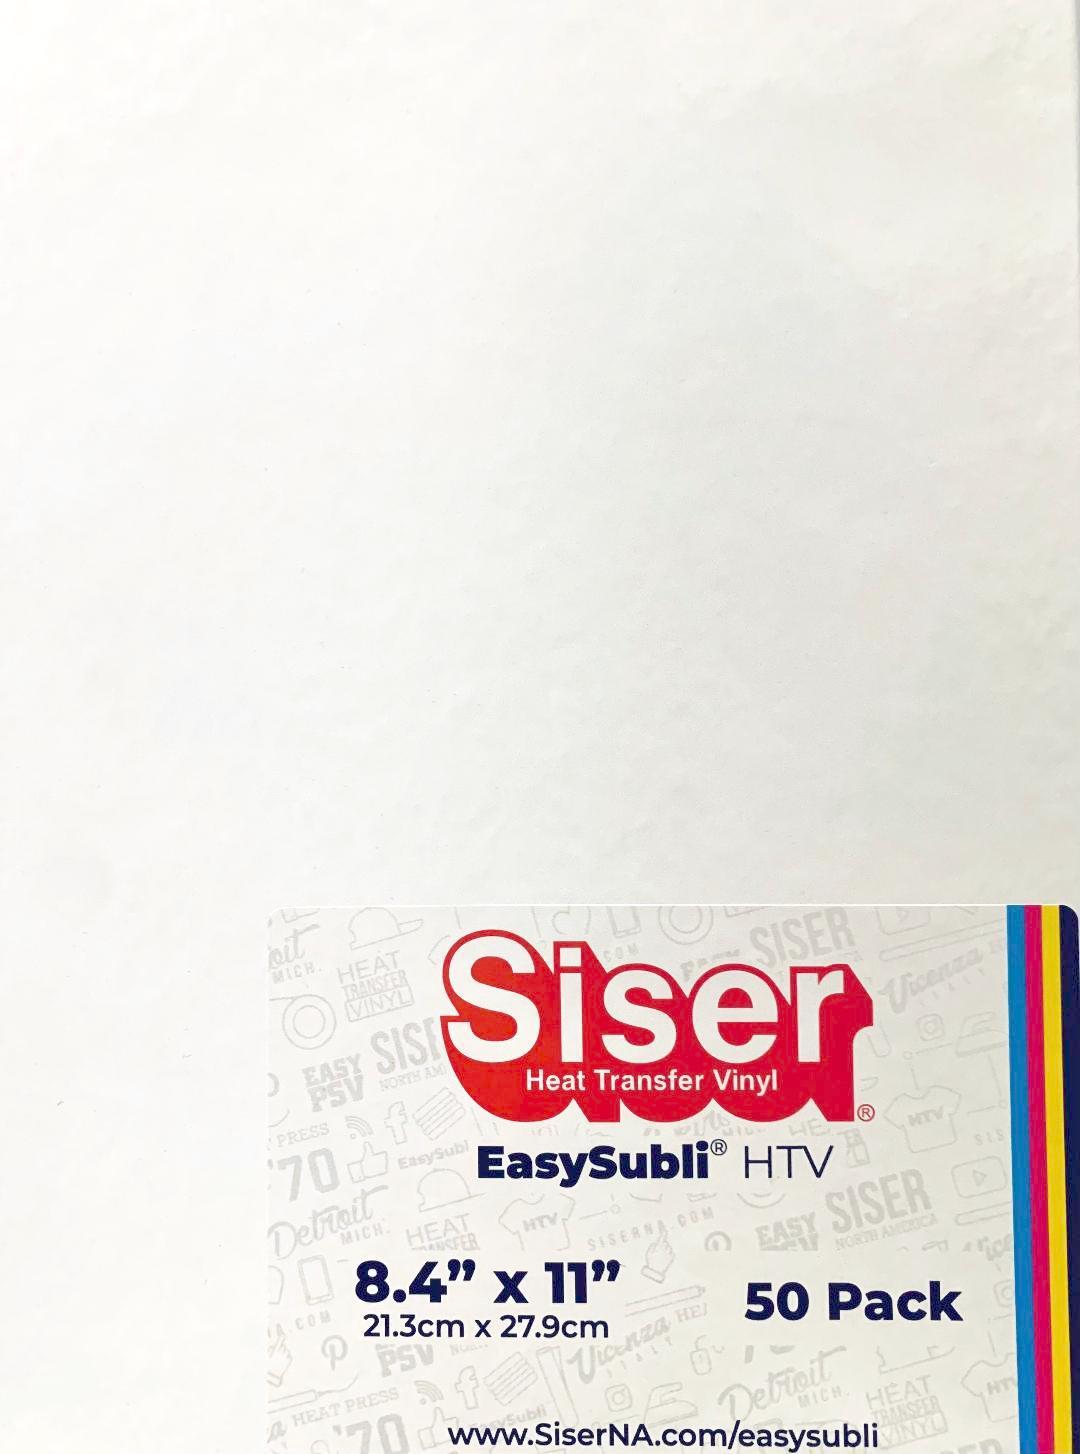 🎨 How to Use Siser EasySubli with Cricut 